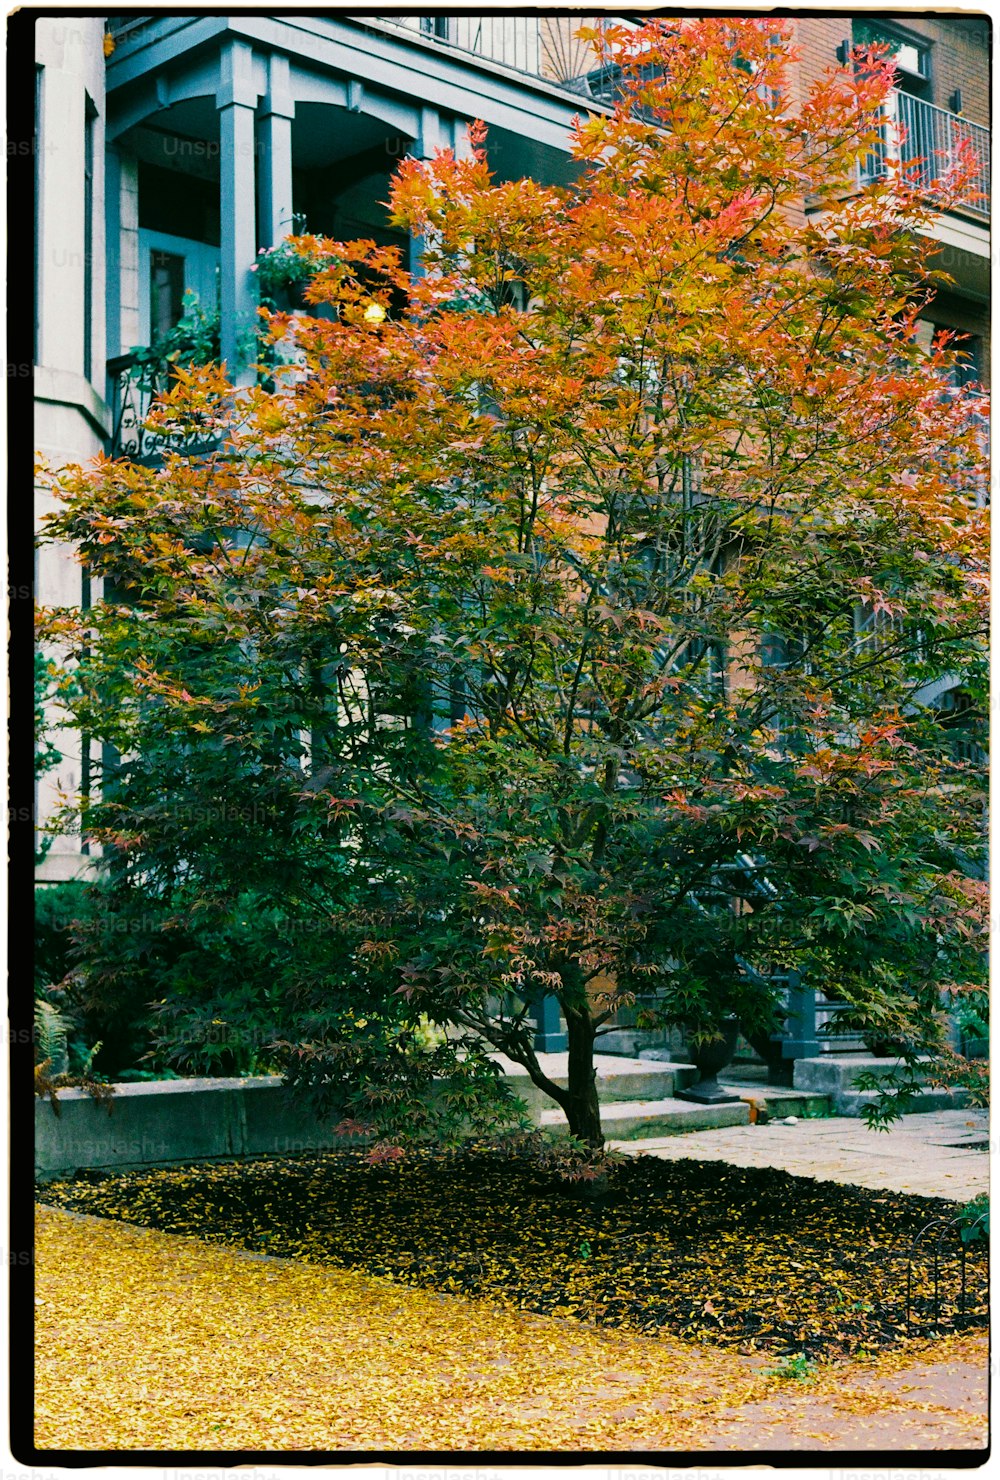 ein Baum mit orangefarbenen Blättern vor einem Gebäude